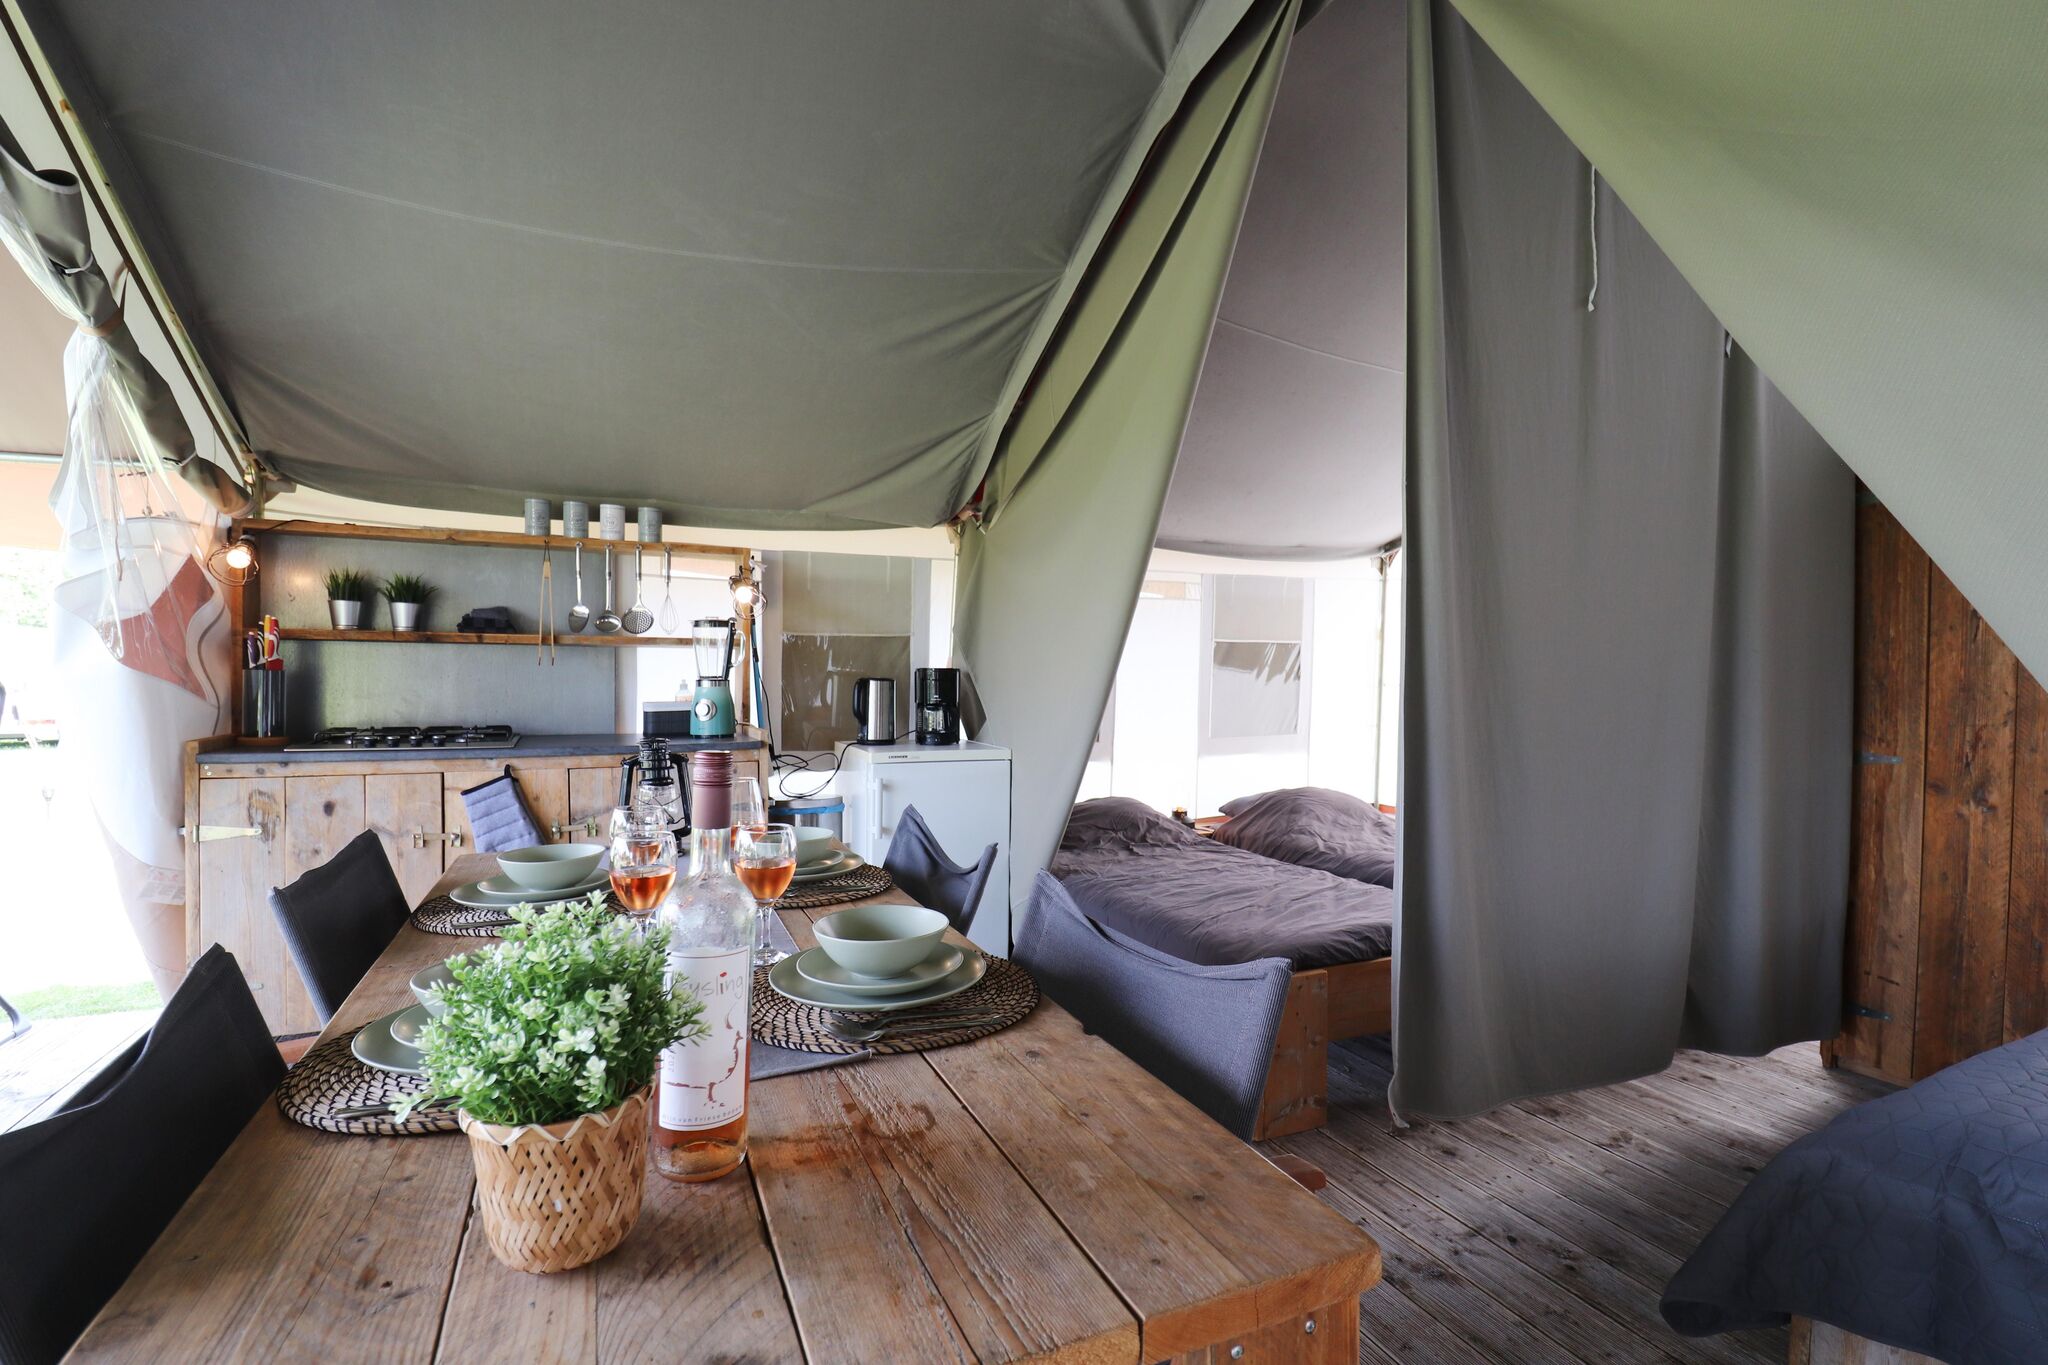 2 Luxury glamor safari tents next to eachother